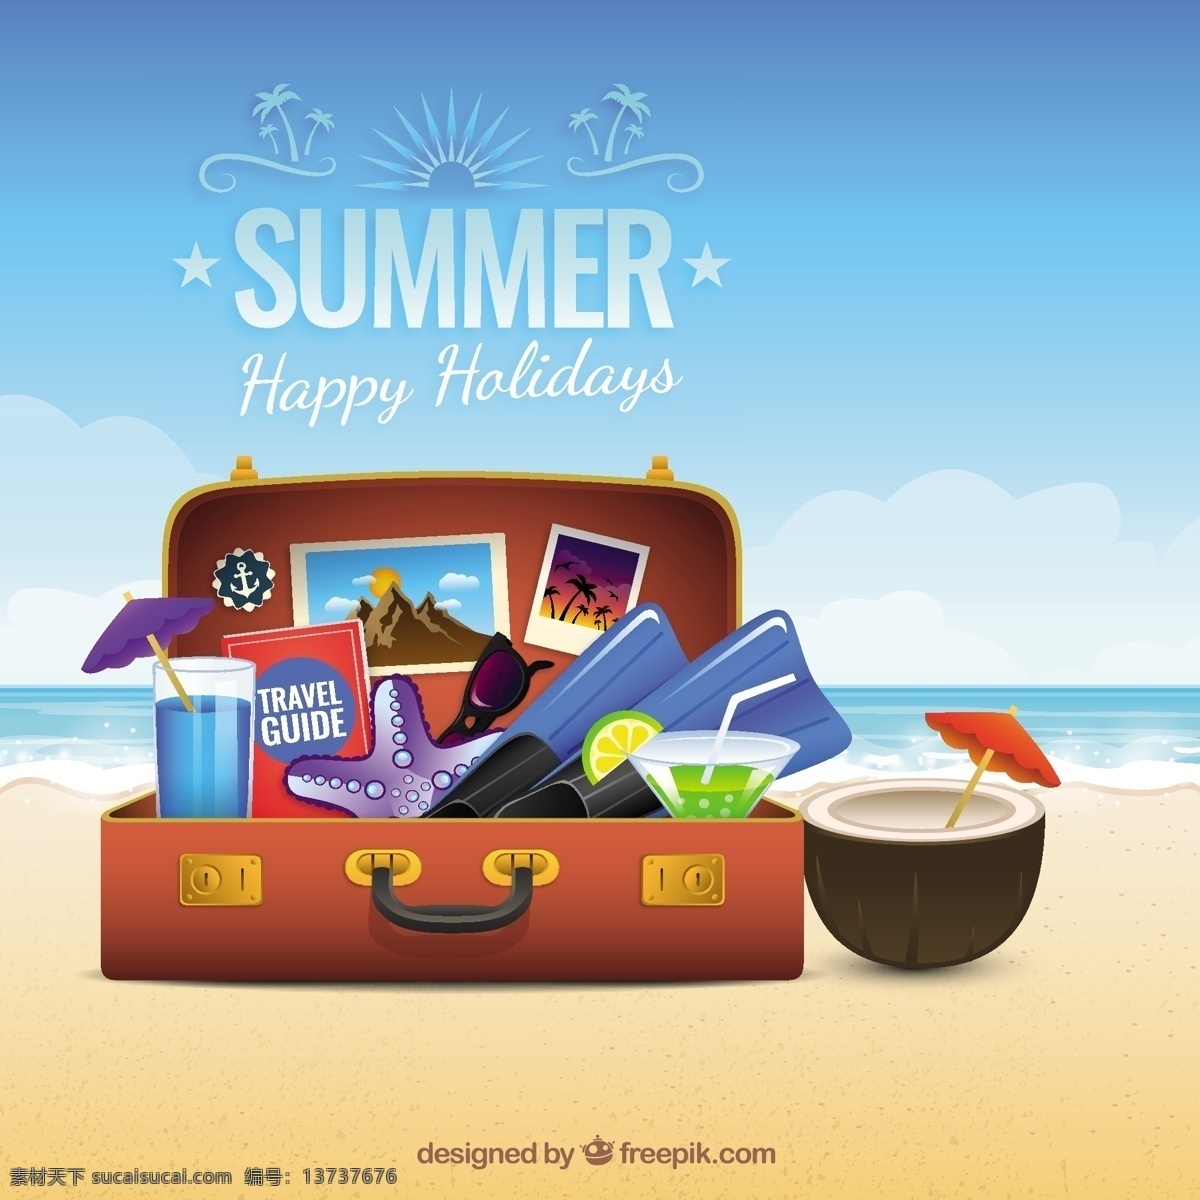 夏天 手提箱 背景 海滩 度假 旅行箱 夏季海滩 假期 行李 夏季 青色 天蓝色